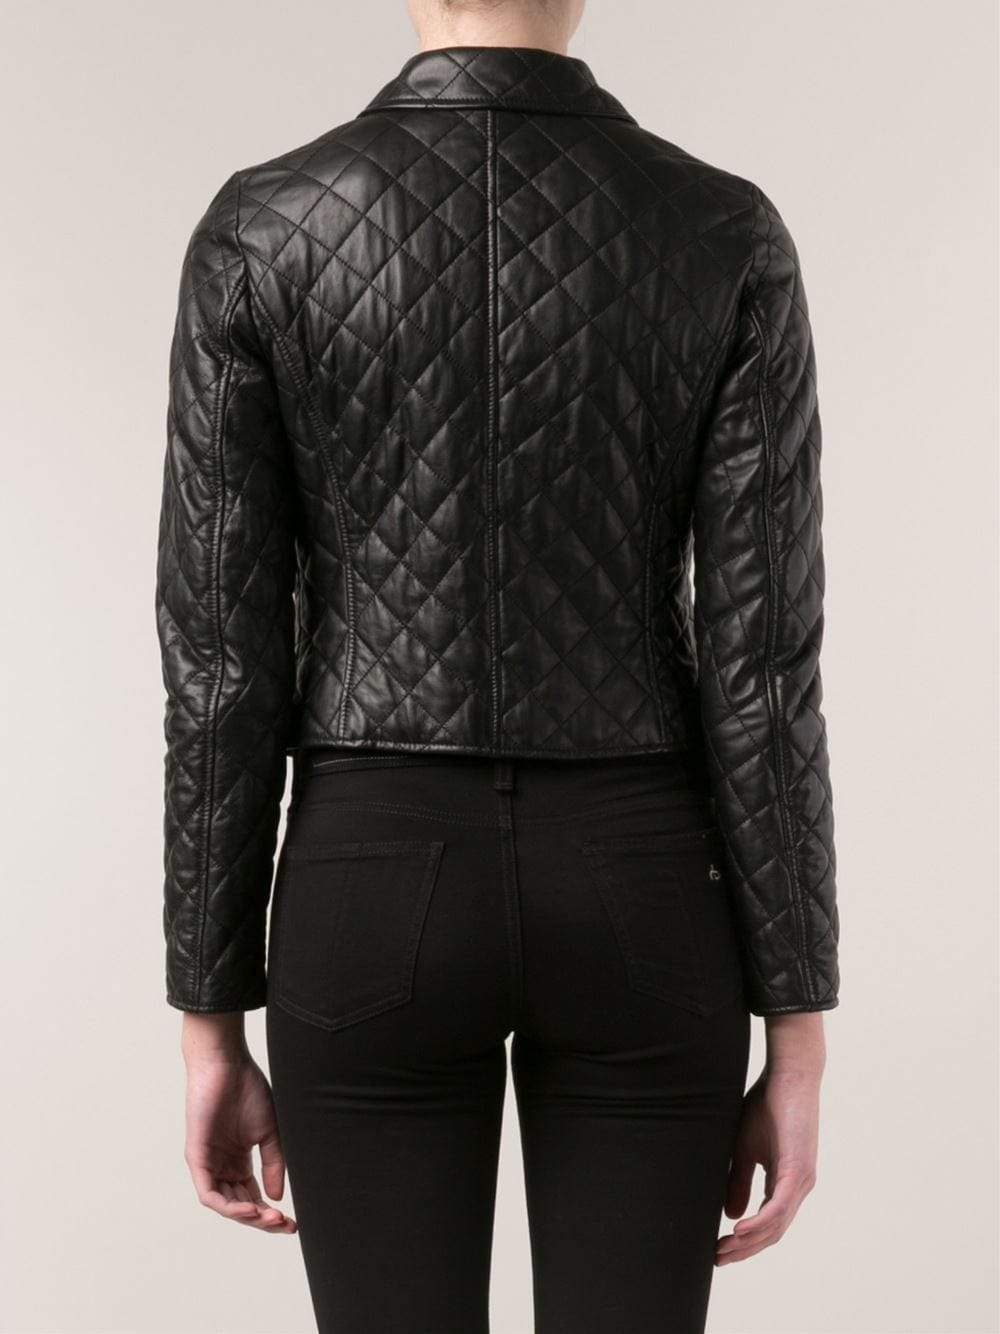 Quilted Leather Jacket CLOTHINGJACKETMISC MICHAEL KORS   